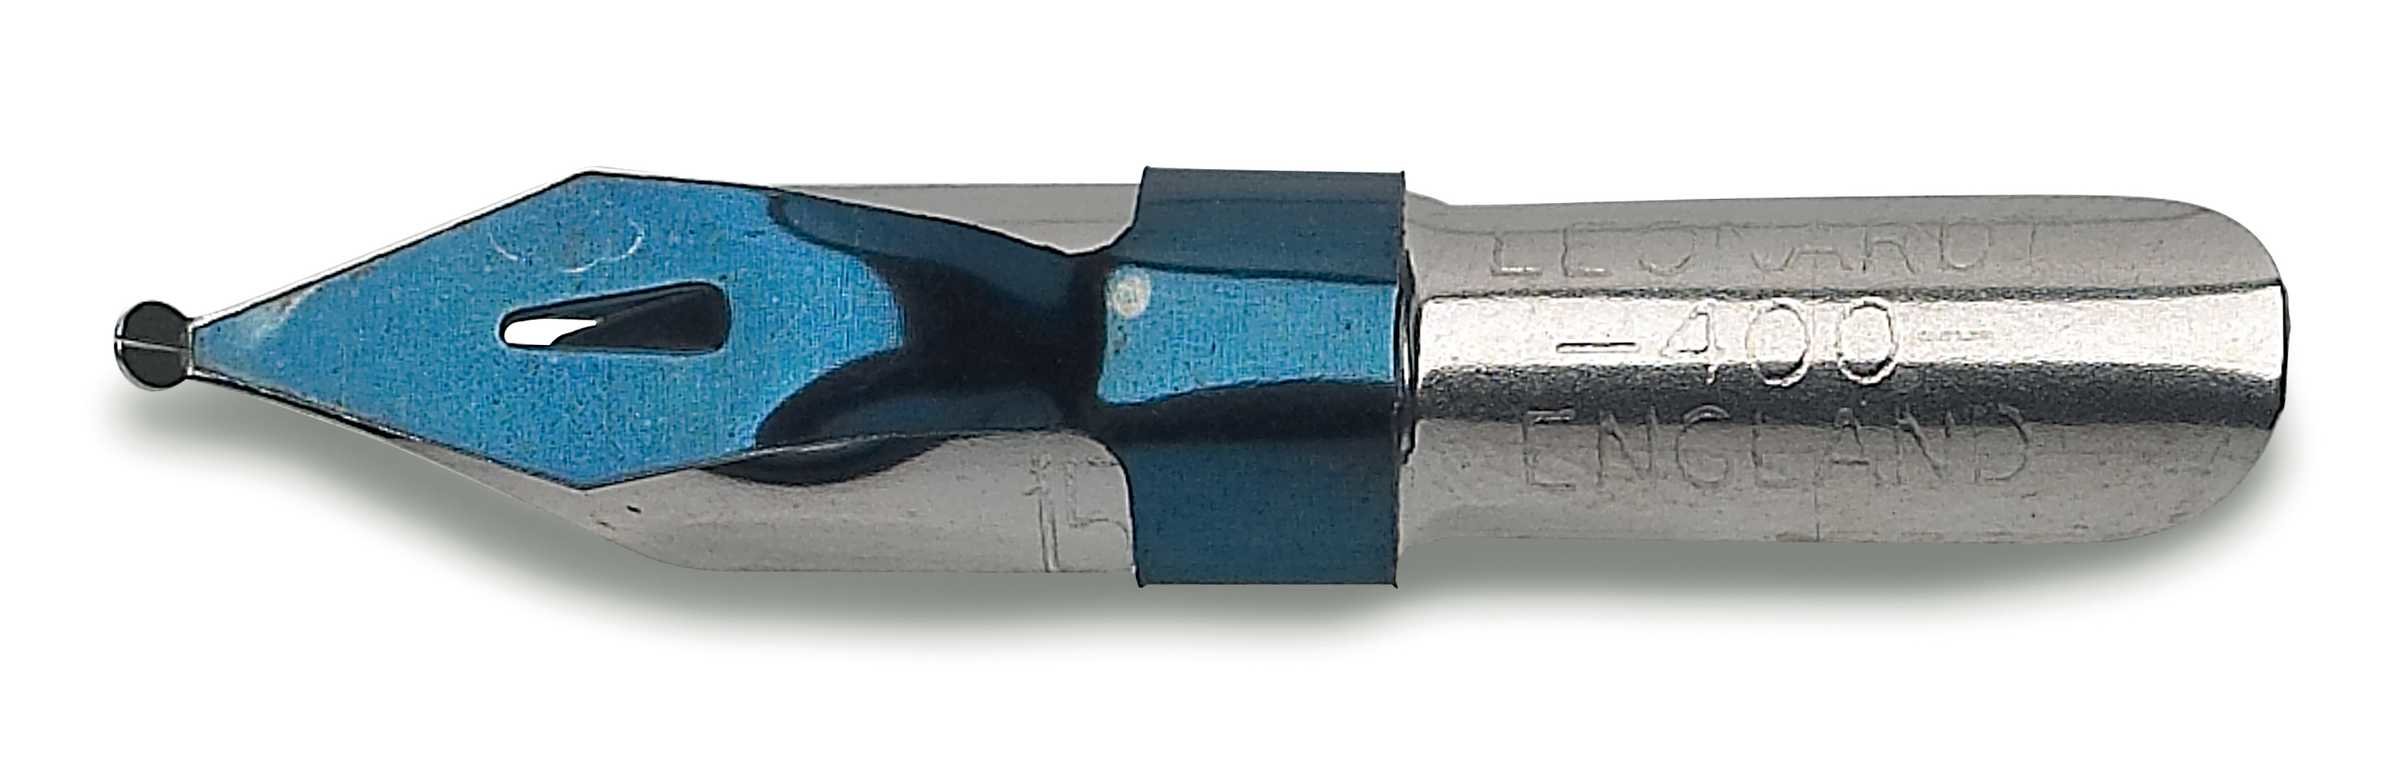 Перо для орнамента ORNAMENTAL полированное, линия 1,5мм по 99.00 руб от Manuscript pen company